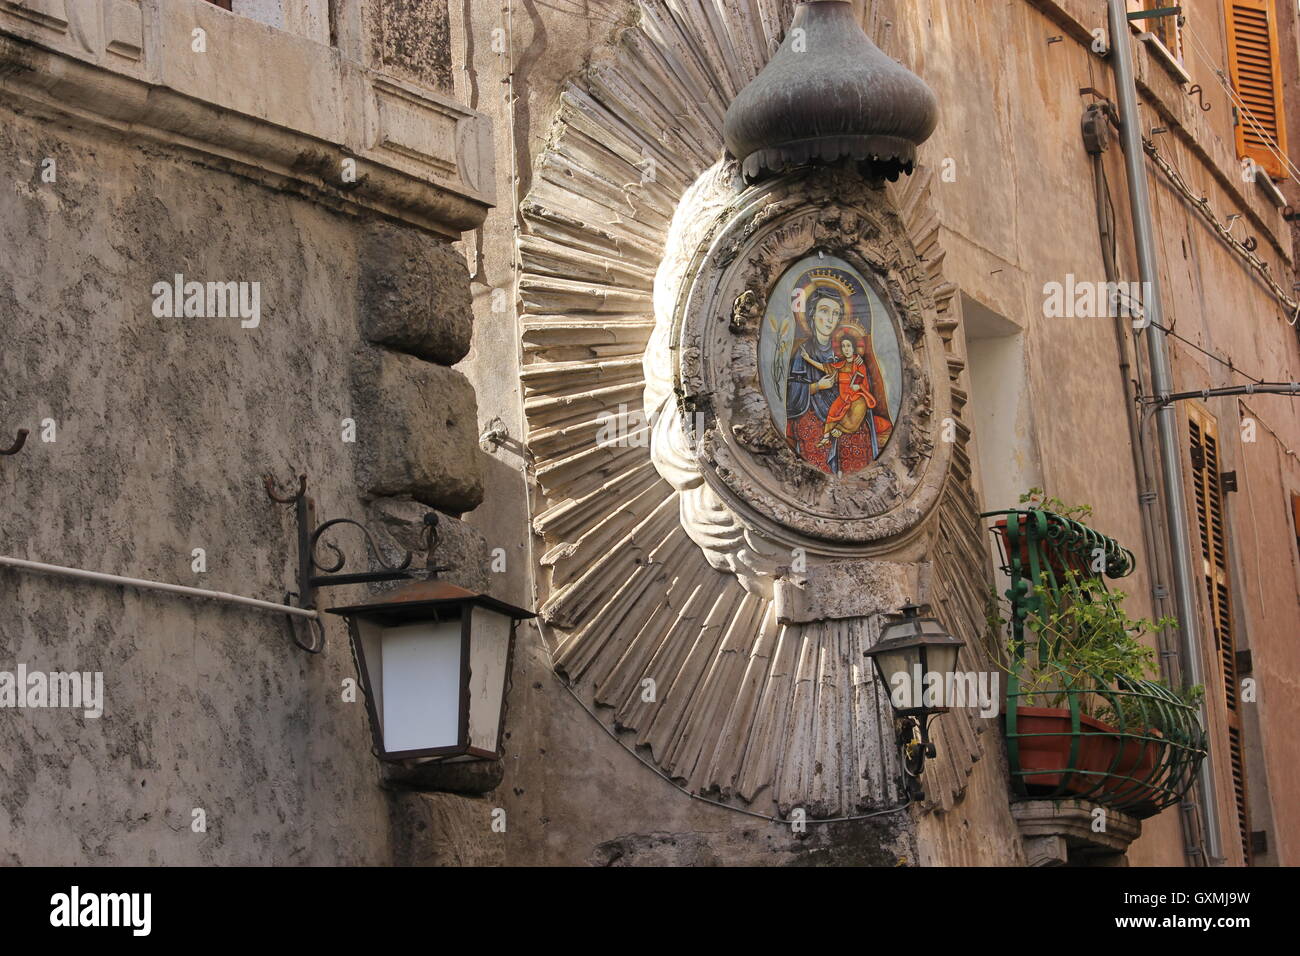 Corner de culte, religieux intéressant décoration sur le côté d'un bâtiment représentant la Vierge Marie et Jésus Madonna, Tivoli, Italie Banque D'Images